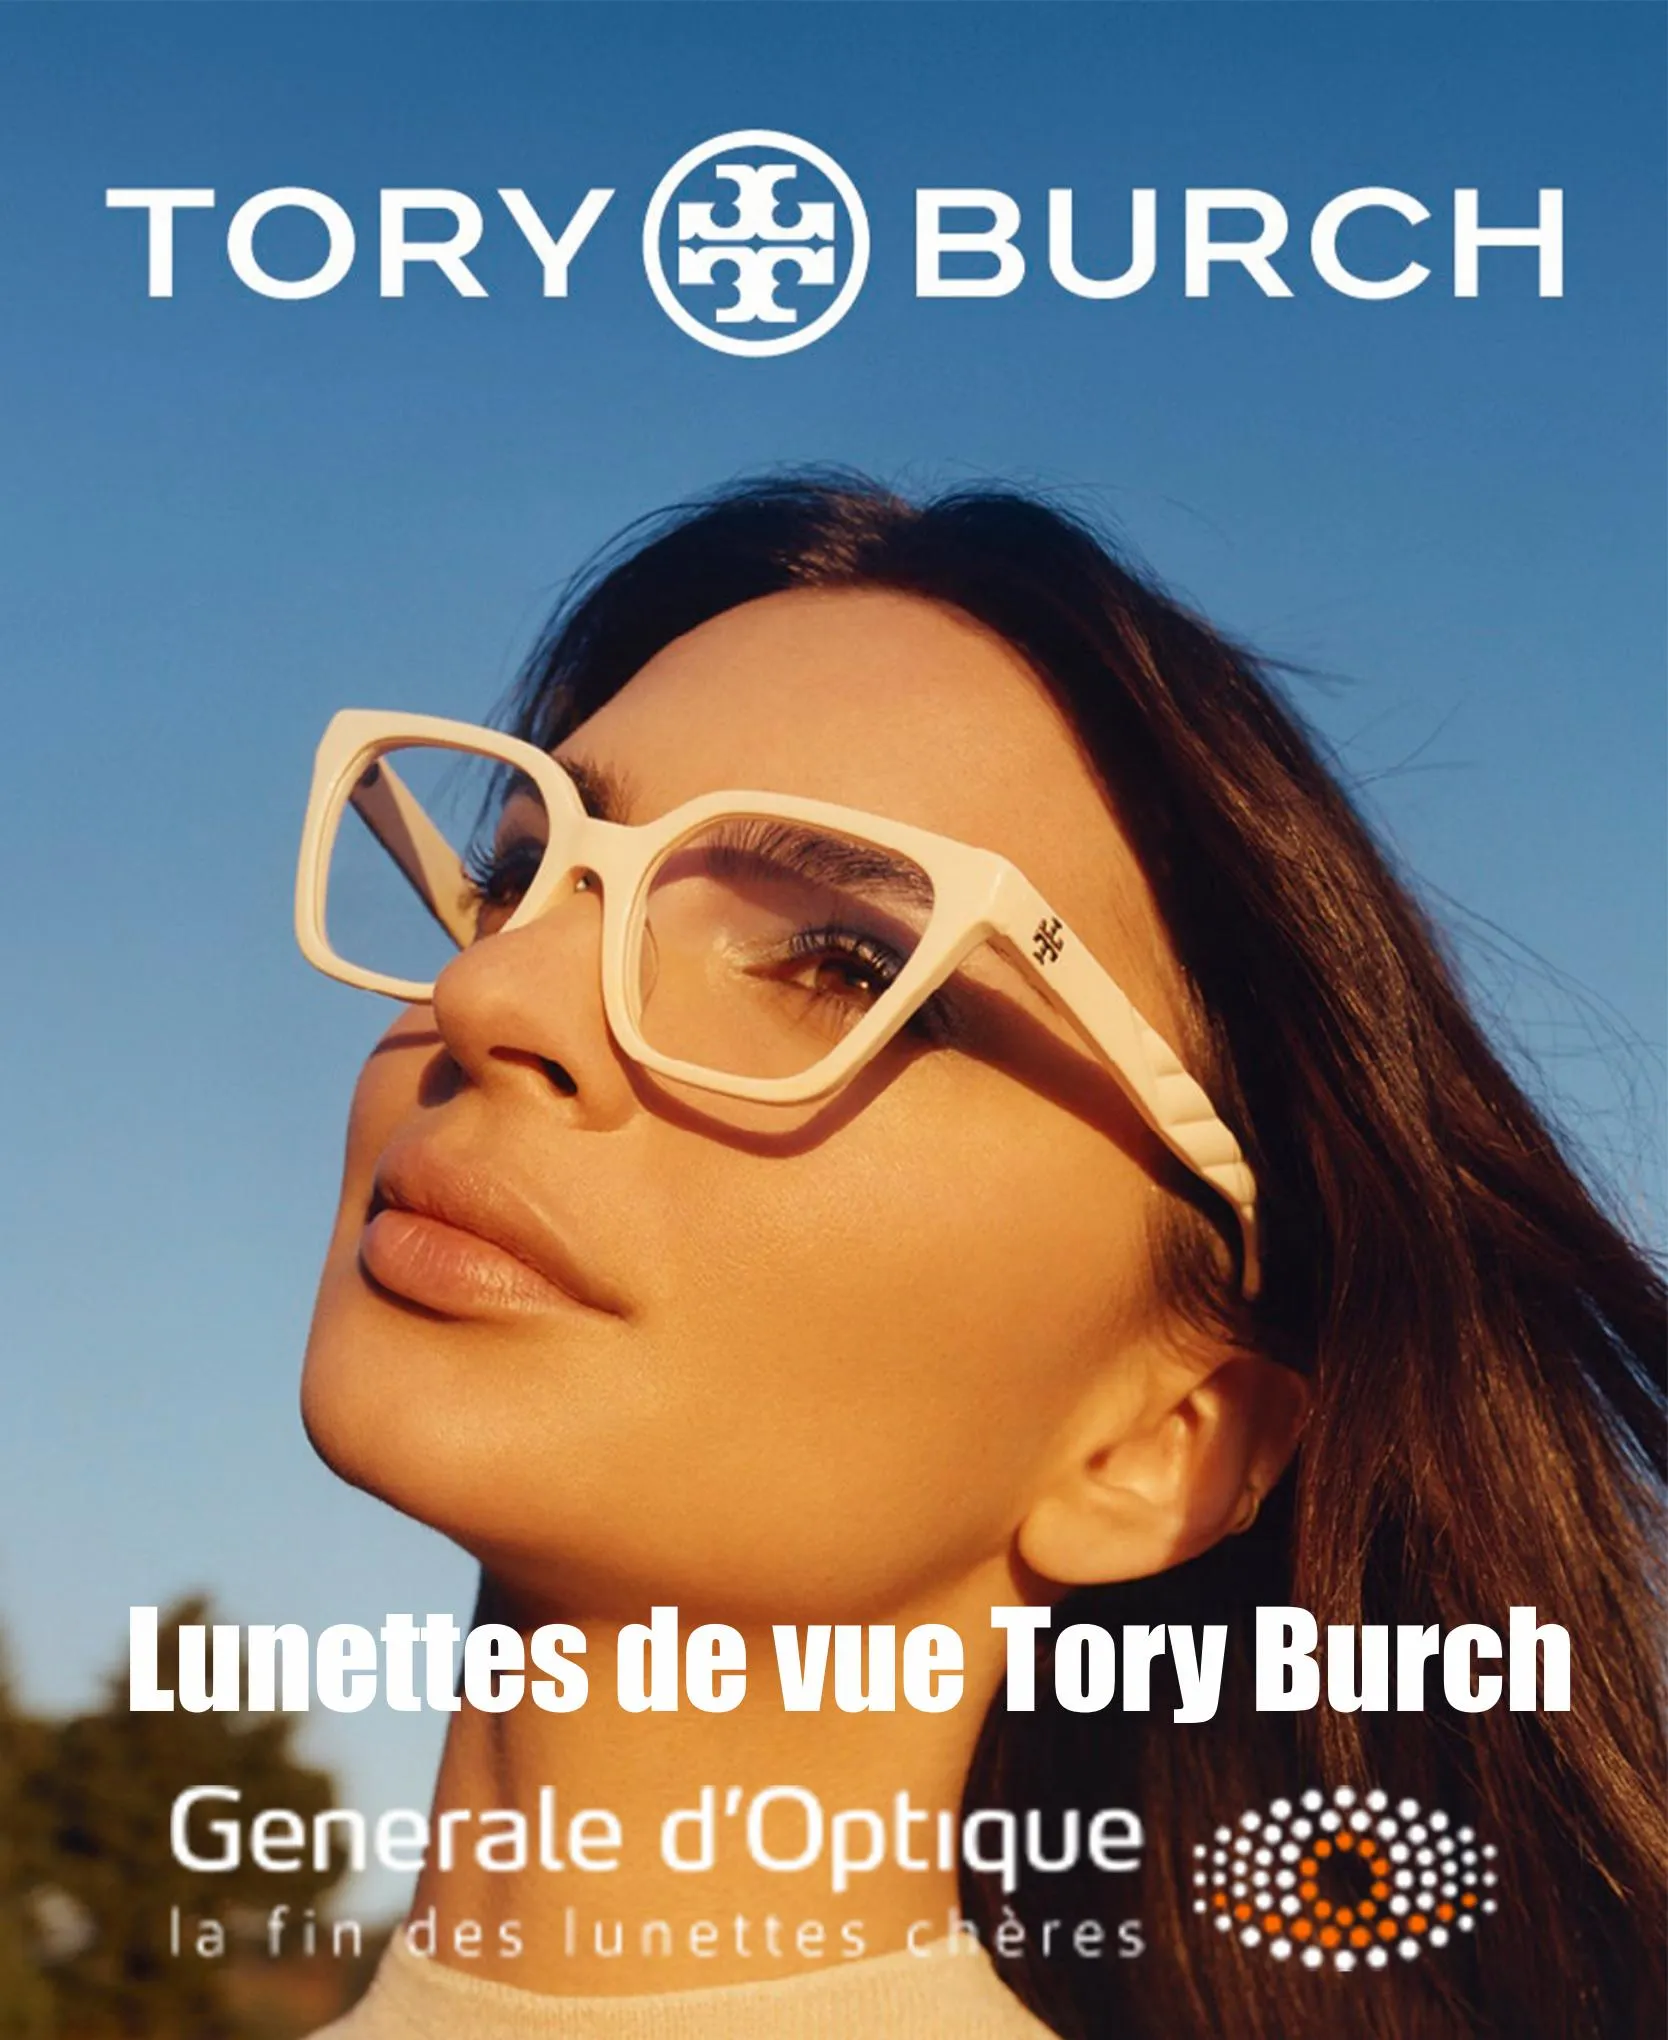 Catalogue Lunettes de vue Tory Burch!, page 00001